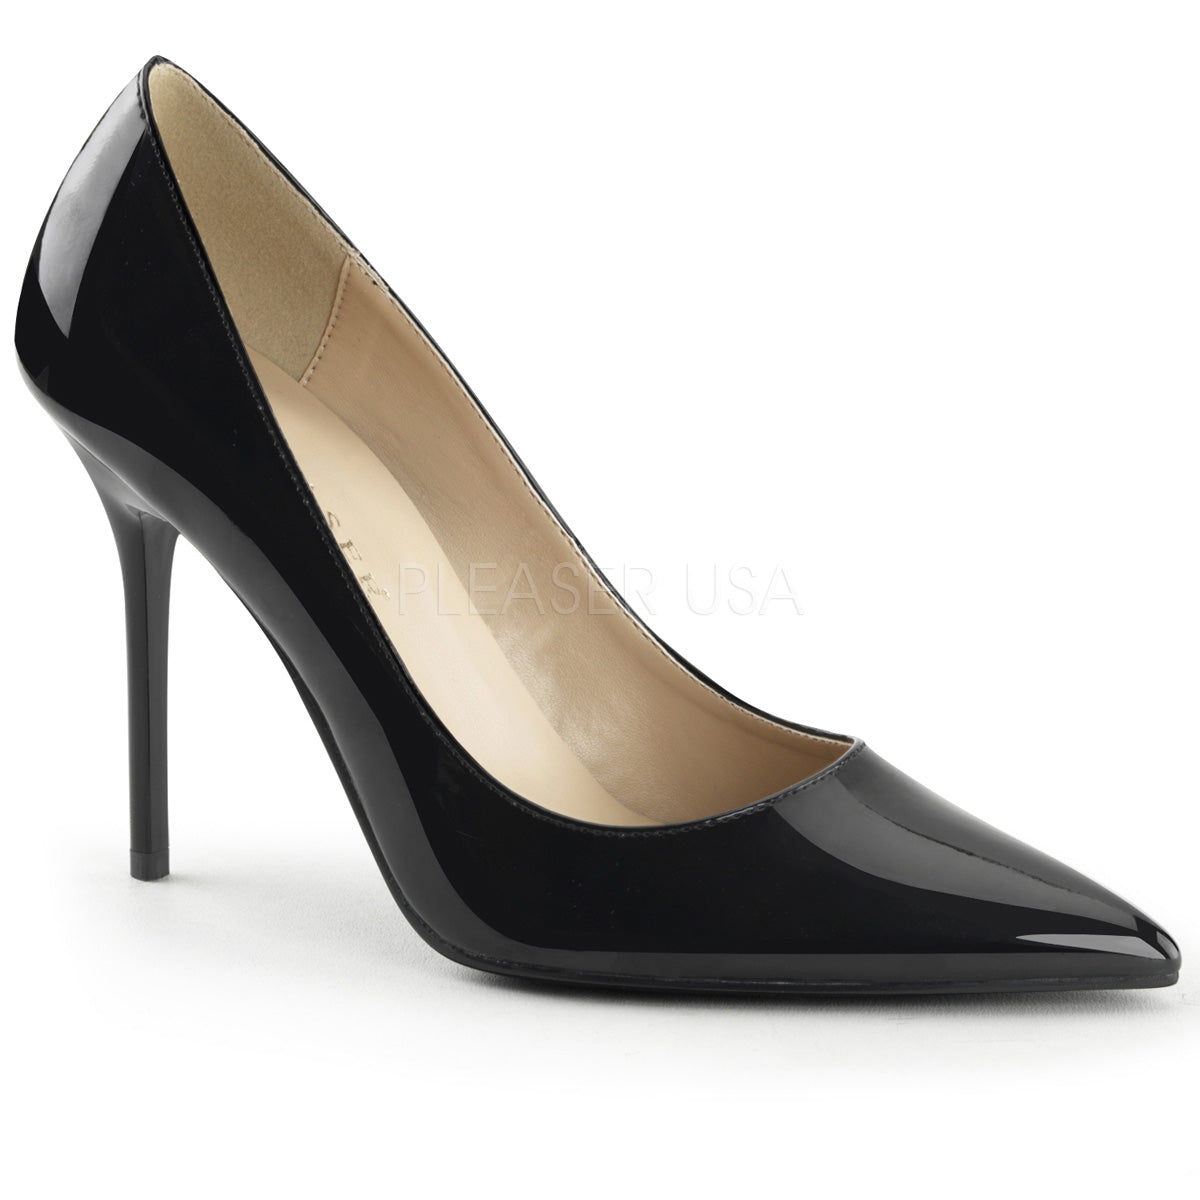 4" black office heels